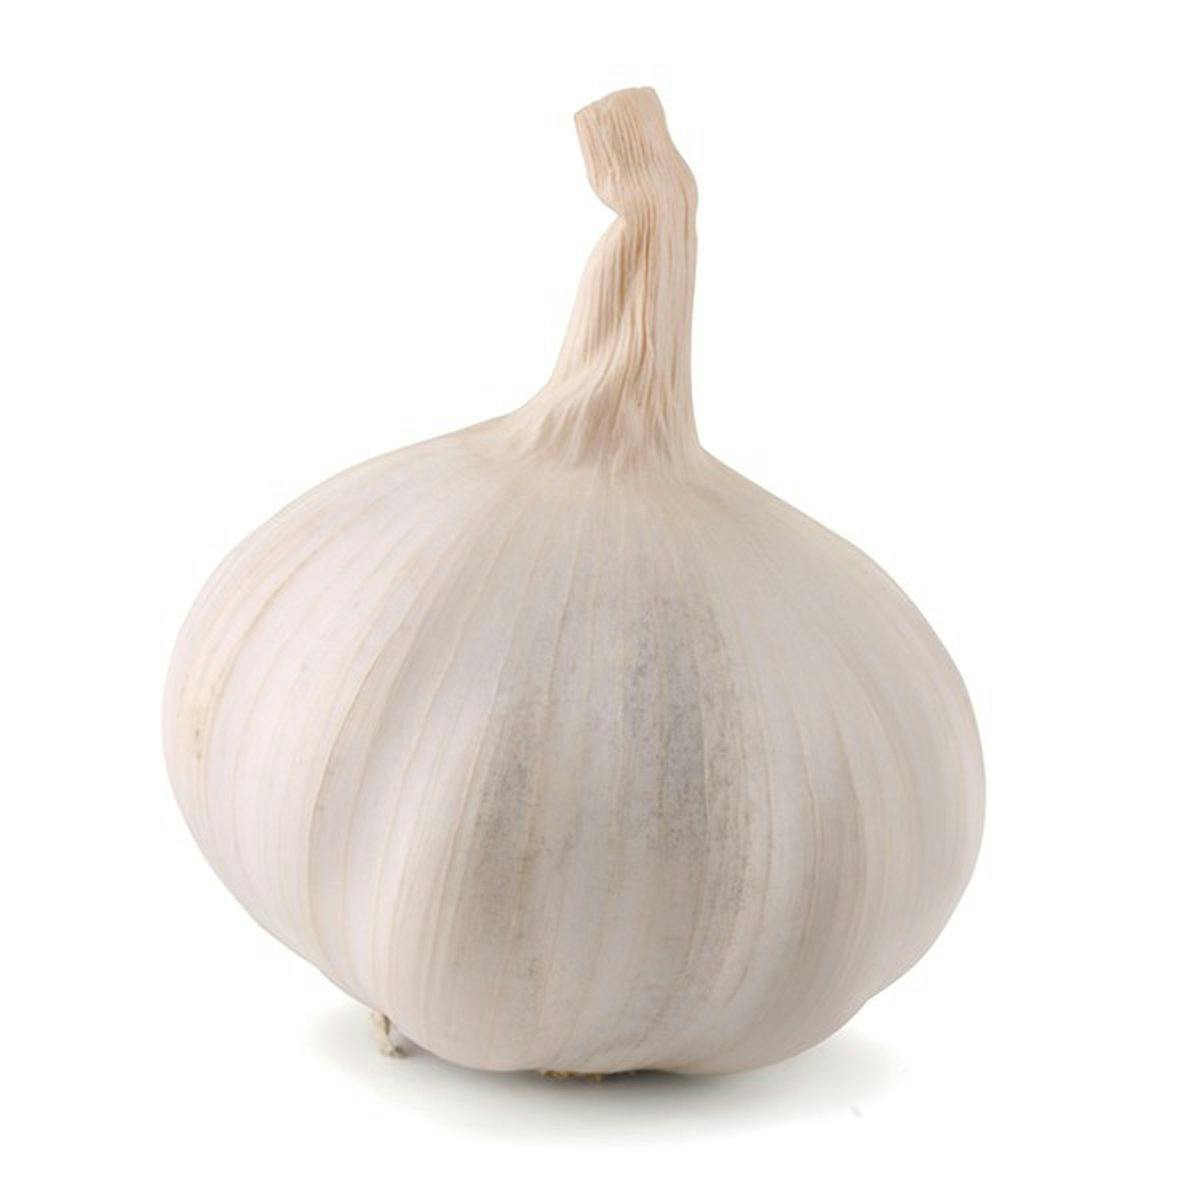 garlic cloves, diced